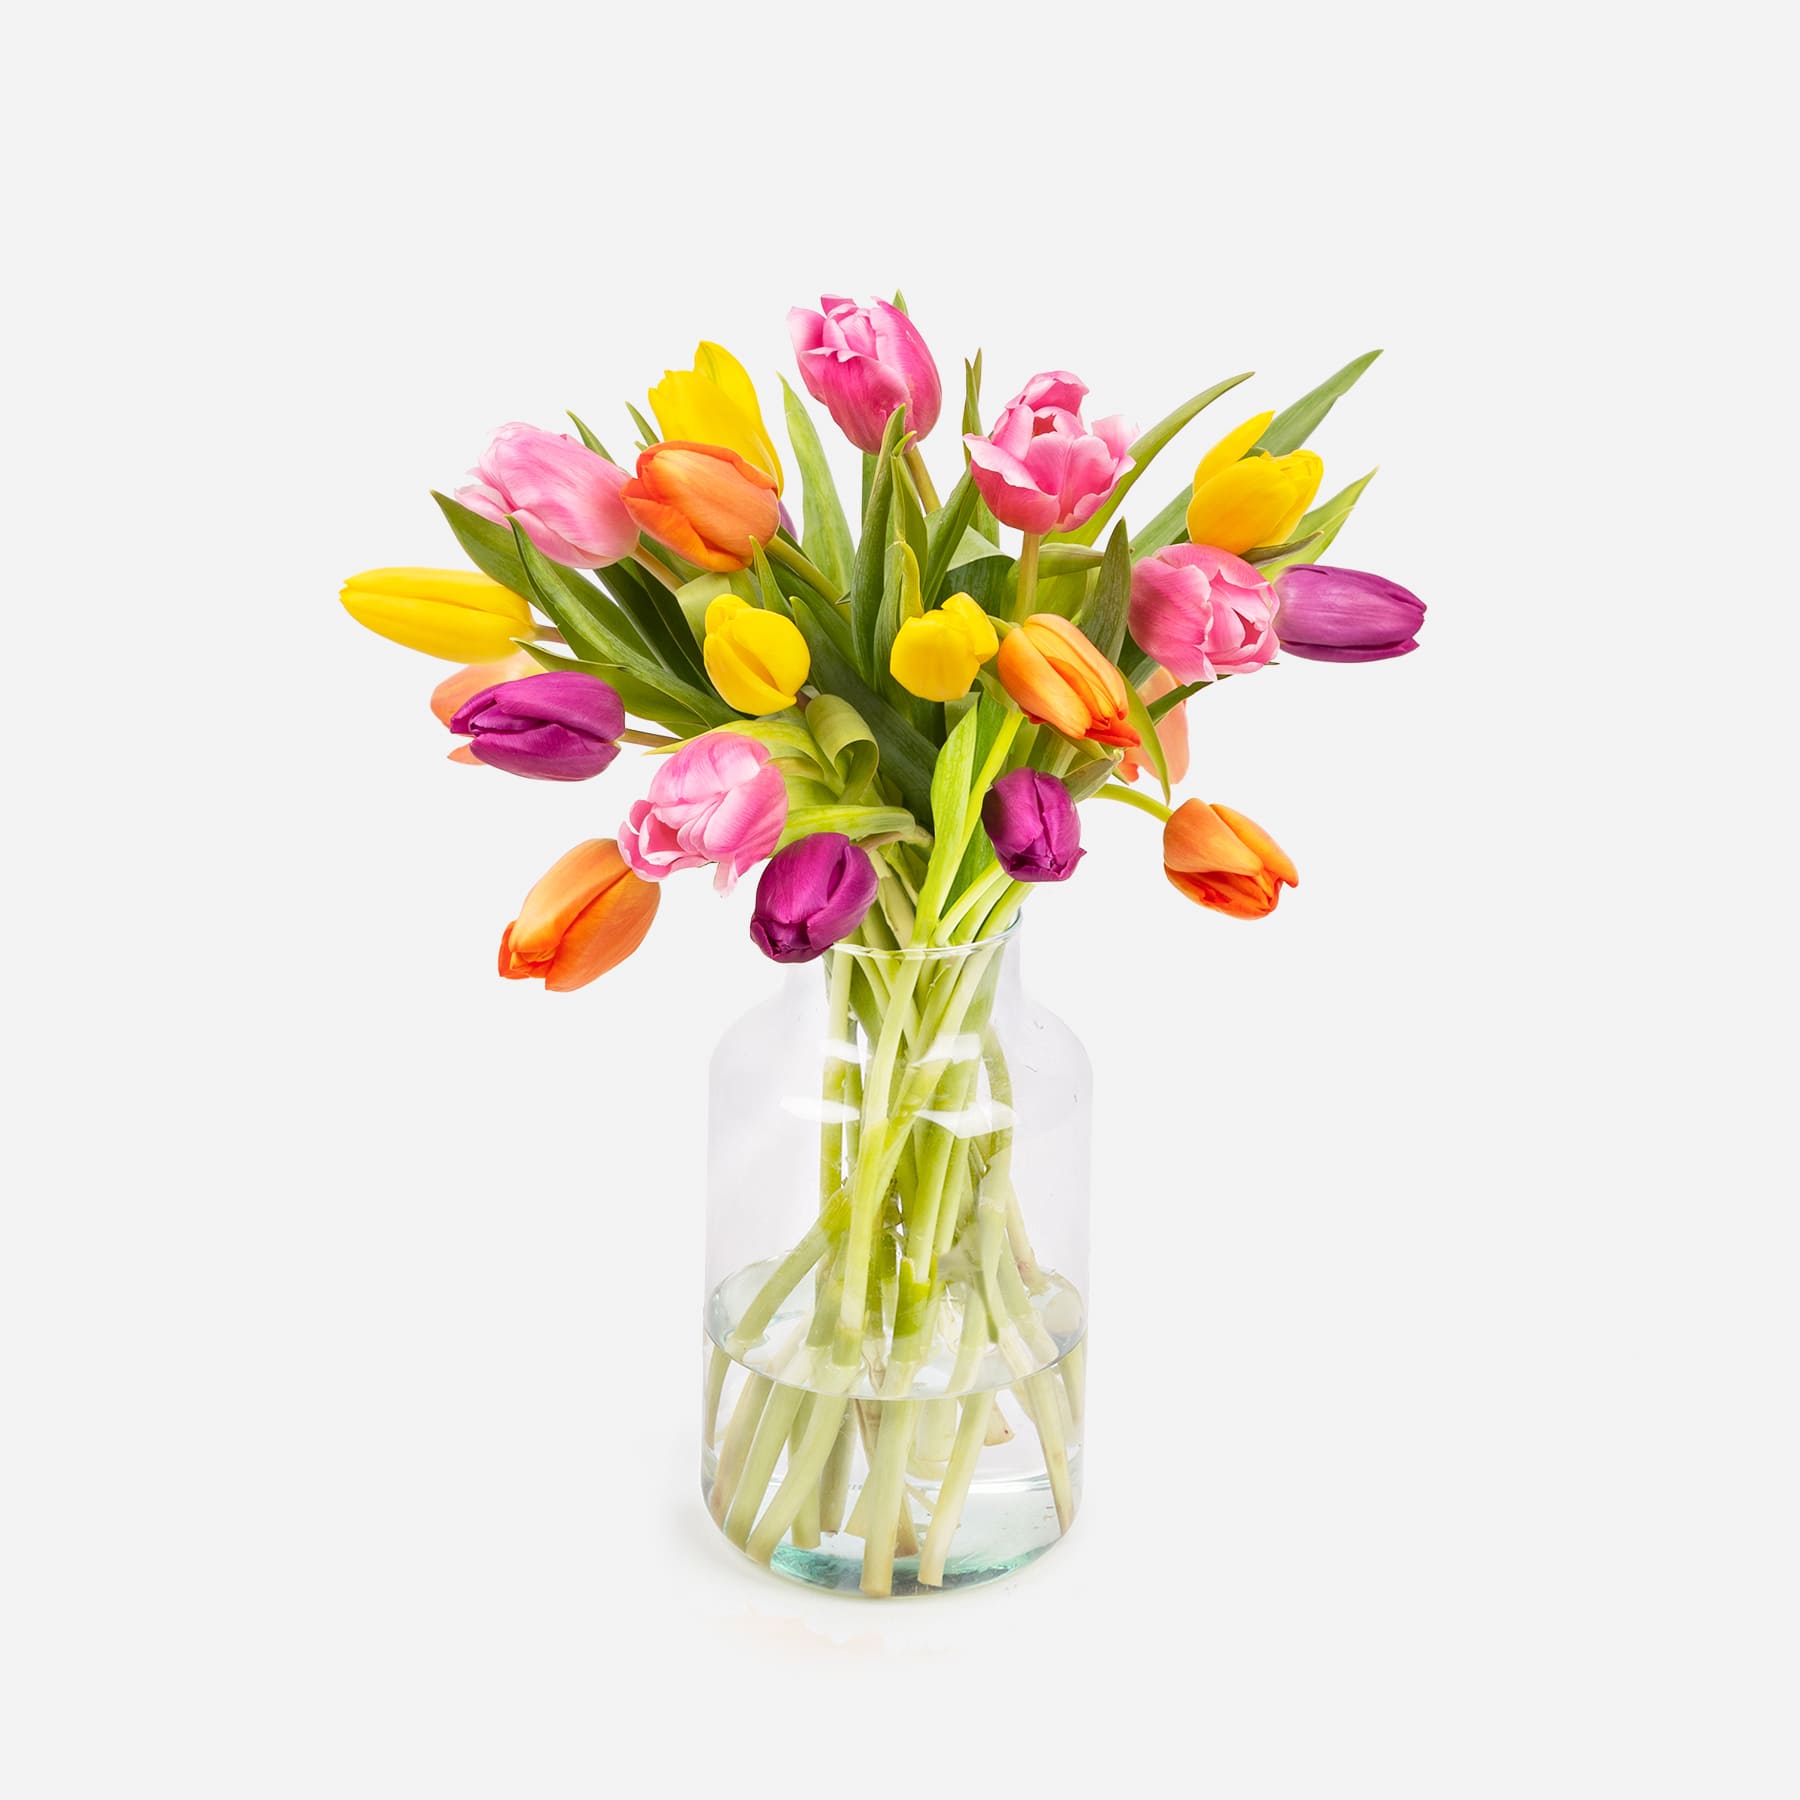 Scopri la nuova collezione di tulipani | Colvin Blog